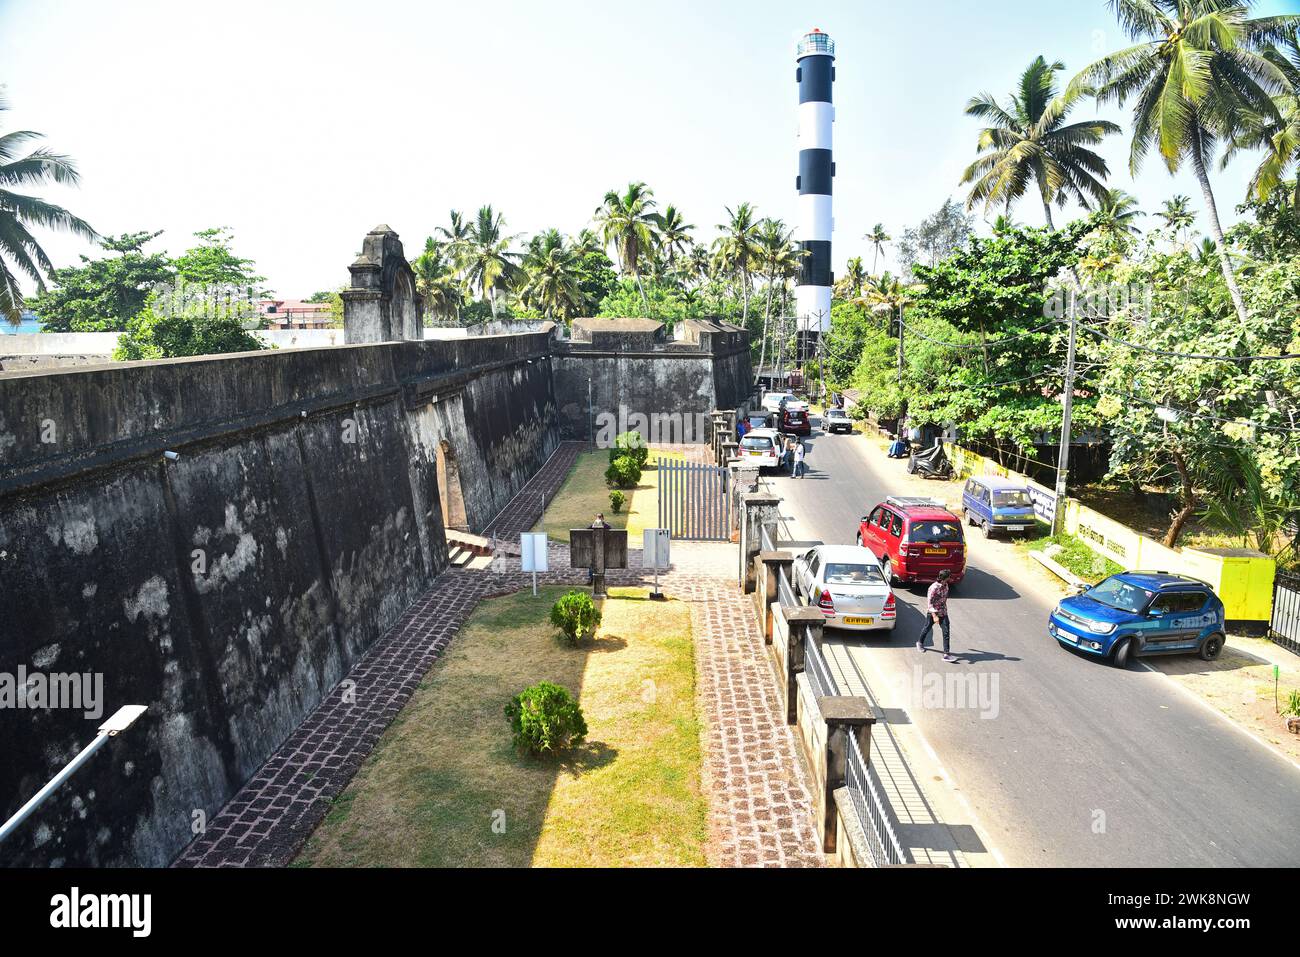 fort d'anjengo ou fort d'anchuthengu, trivandrum, kerala, inde. il a été construit en 1699 par la compagnie britannique des indes orientales. Banque D'Images